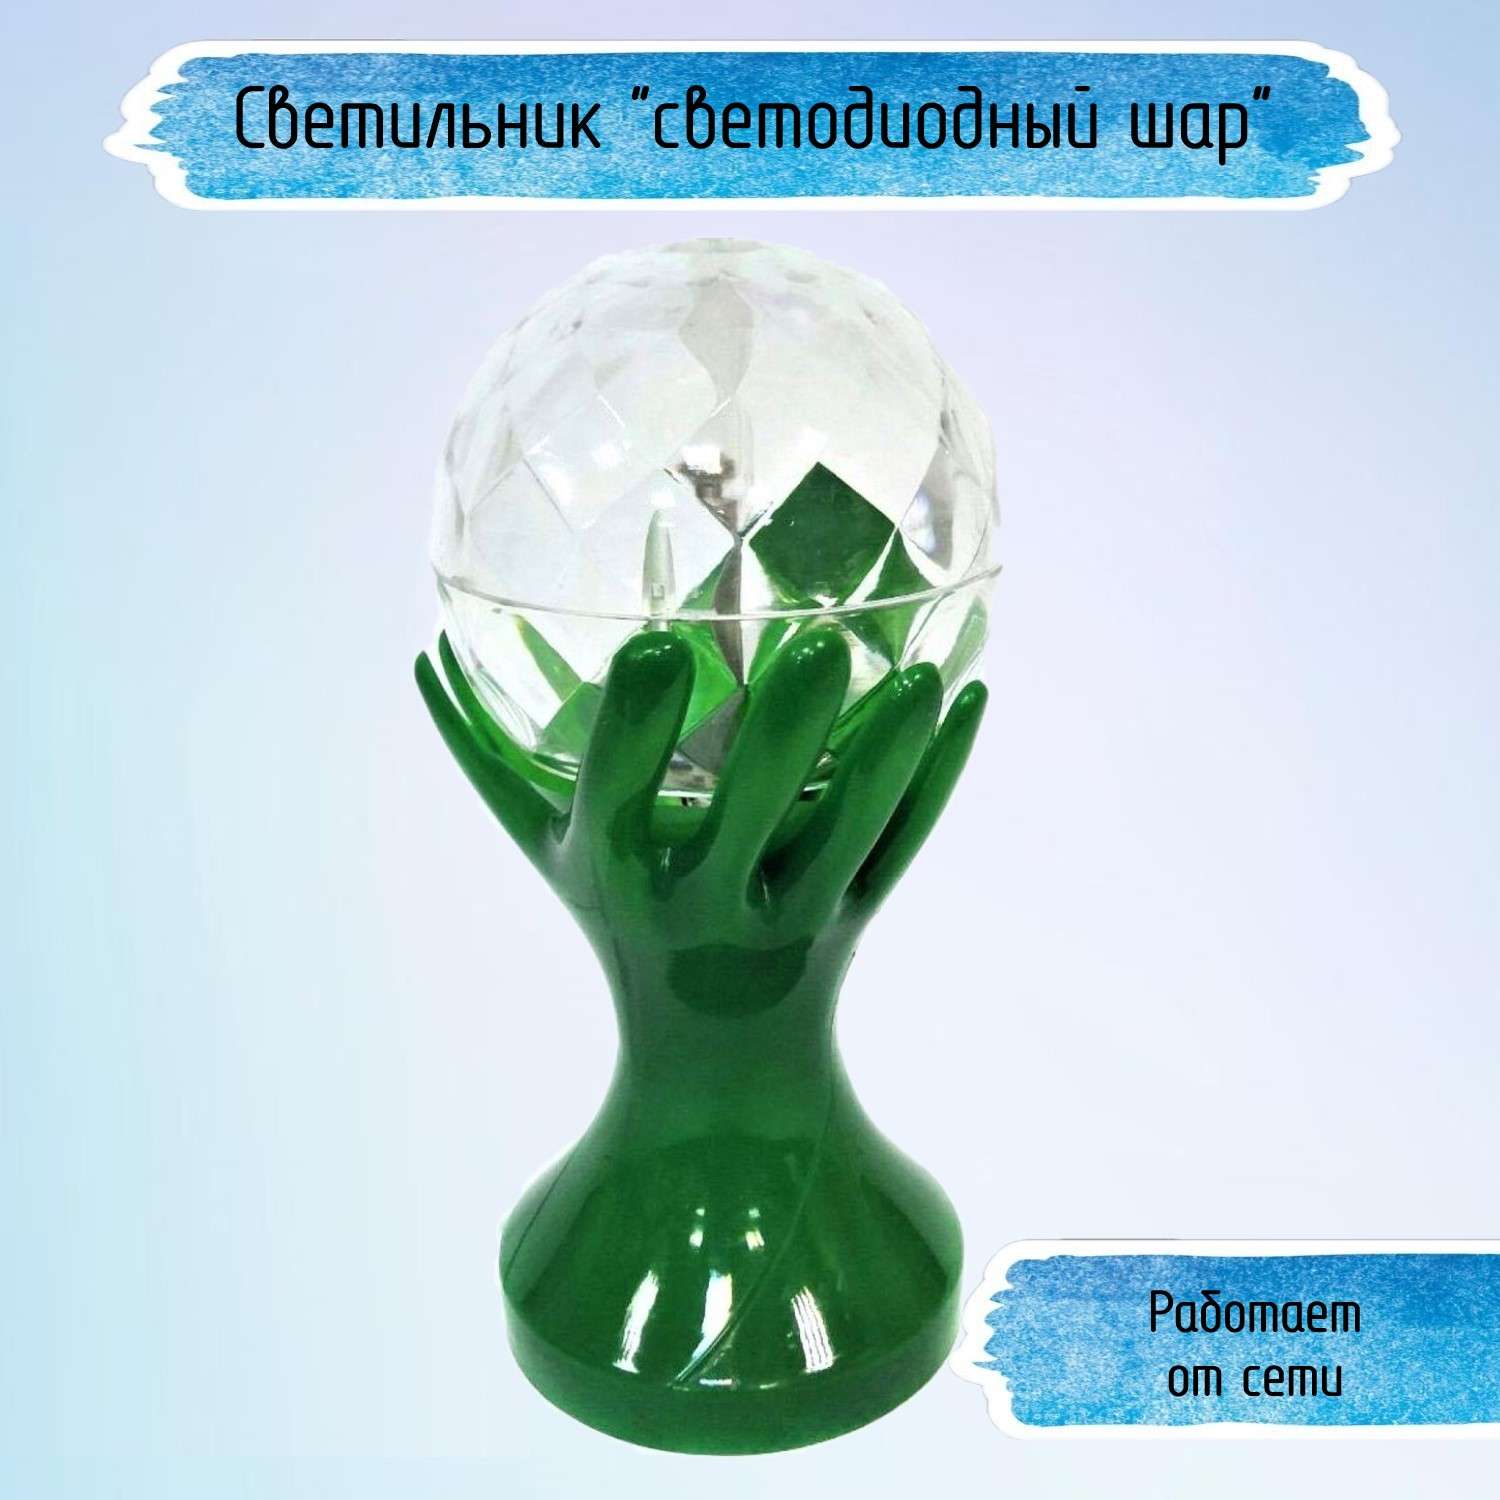 Светильник Uniglodis светодиодный шар Зеленый - фото 1